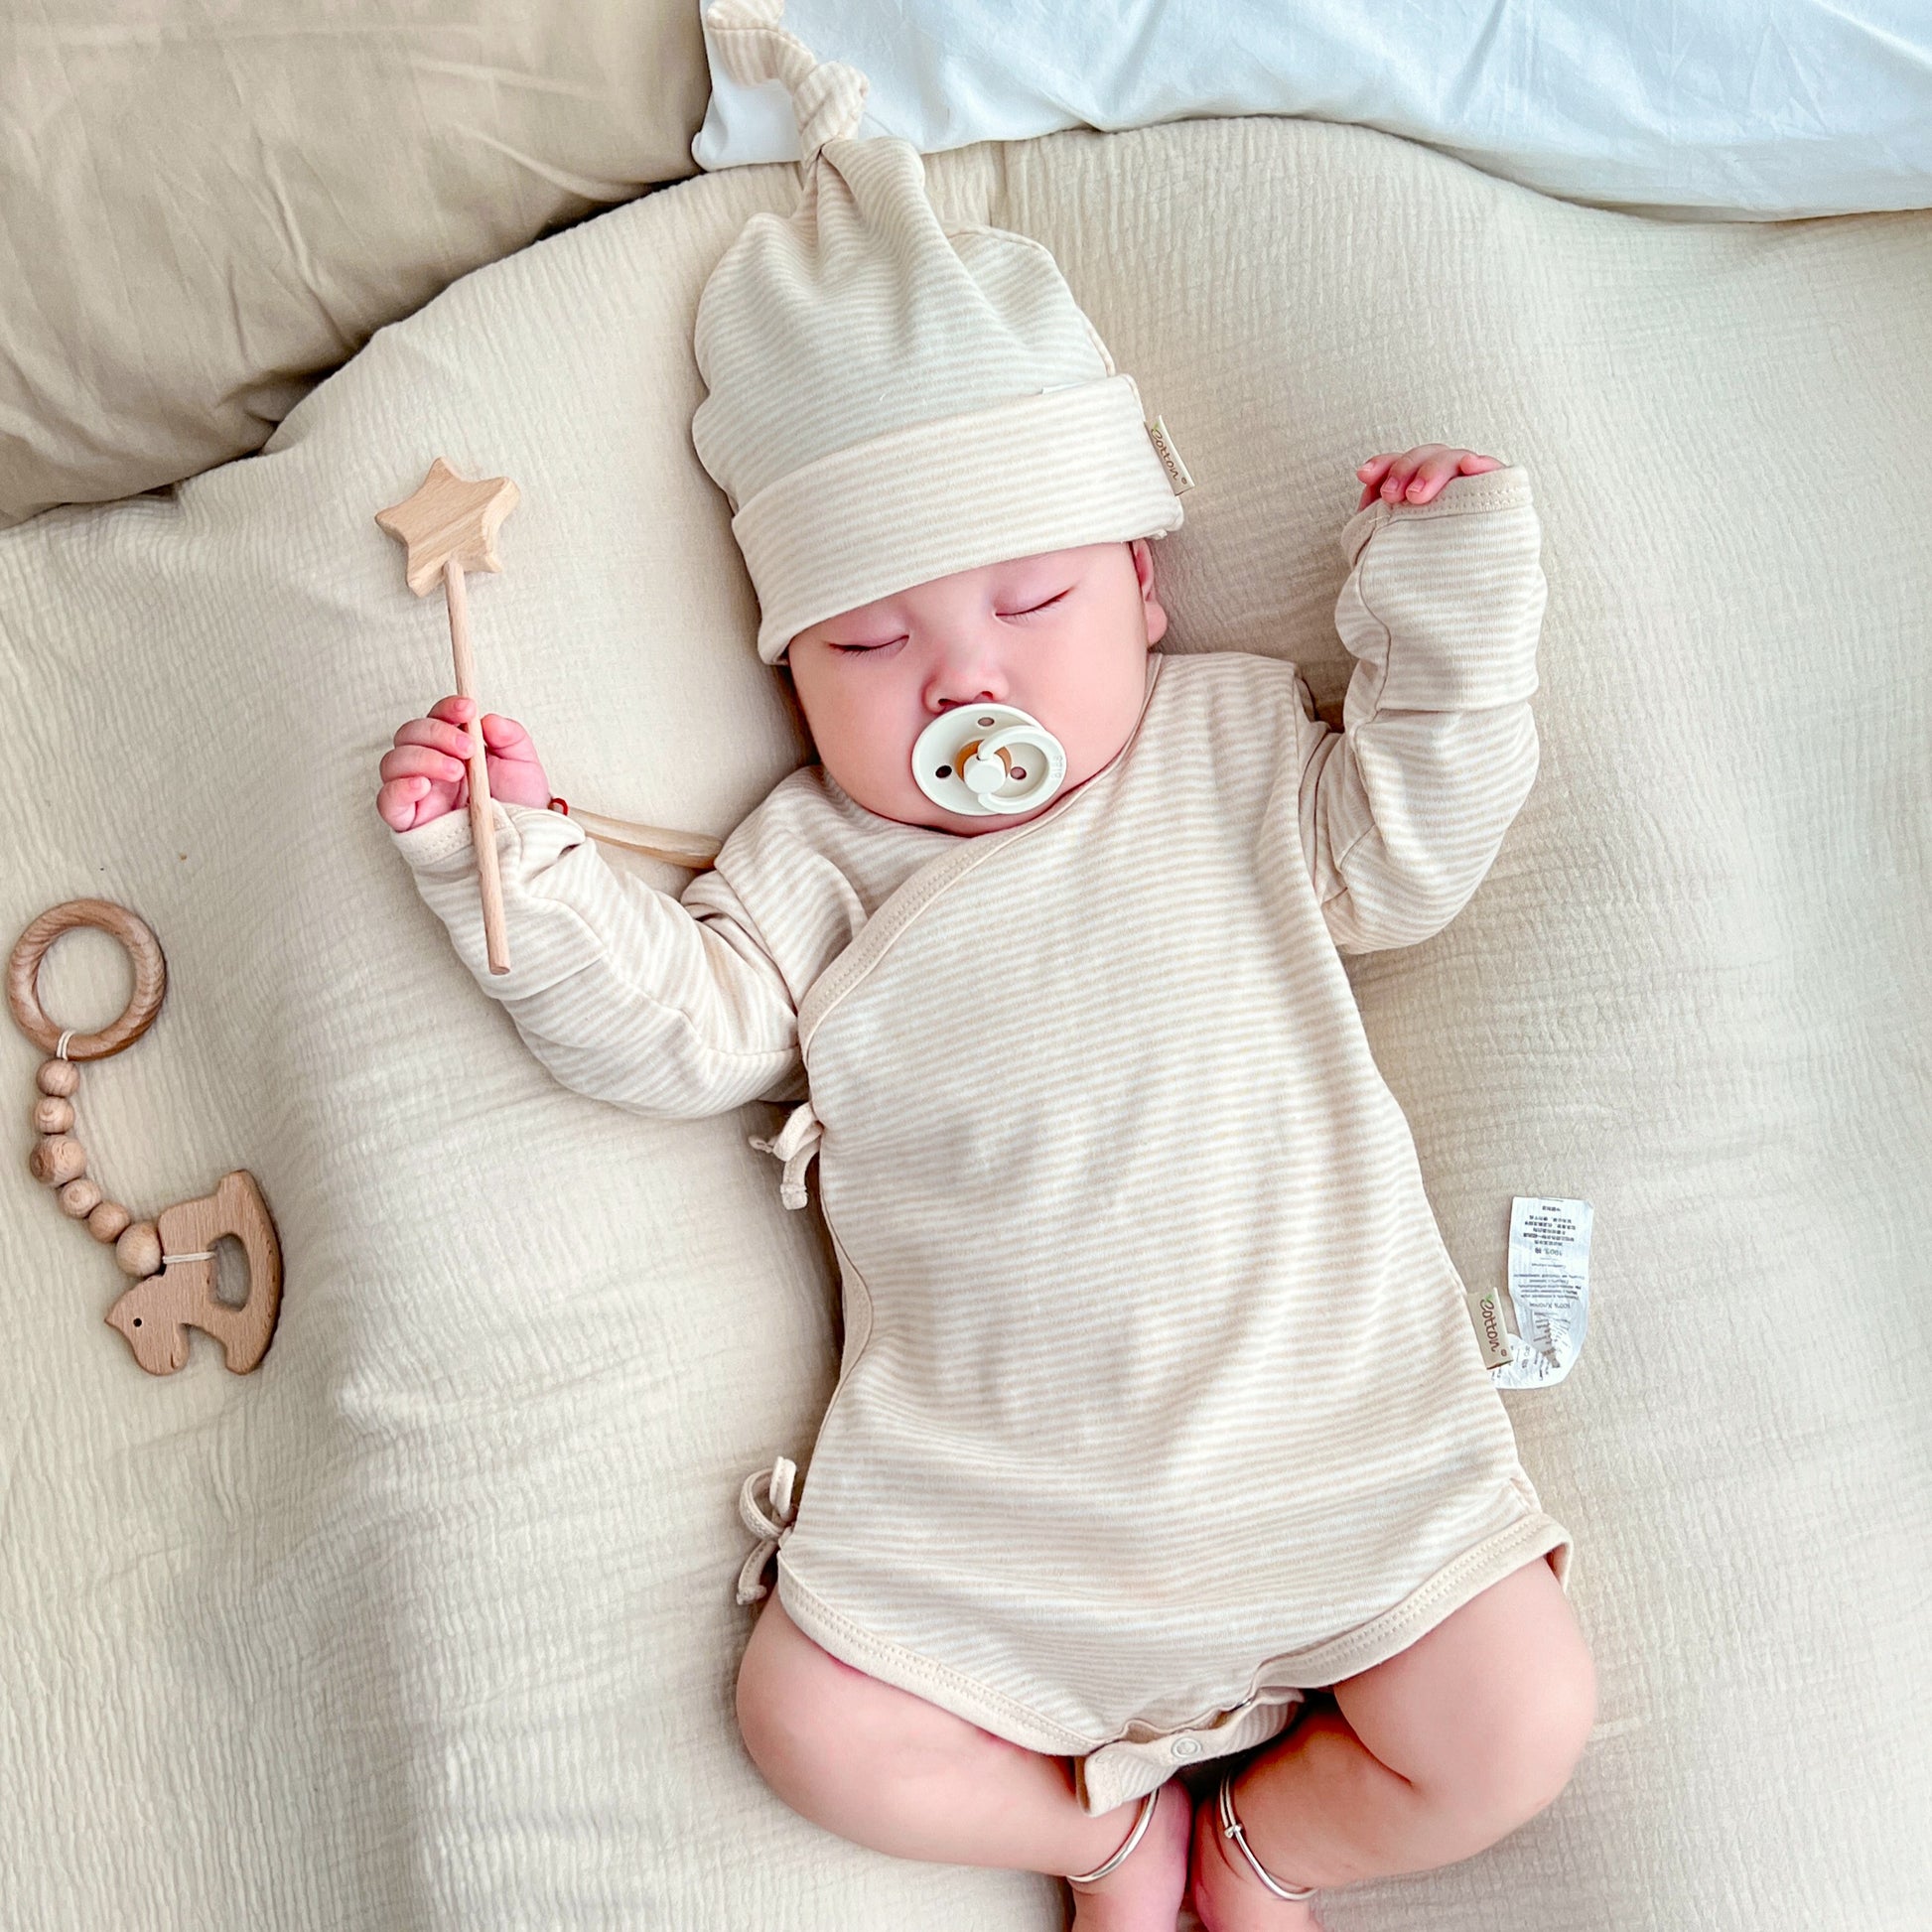 Baby Gifts: Organic Newborn Layette Sets - Jungle